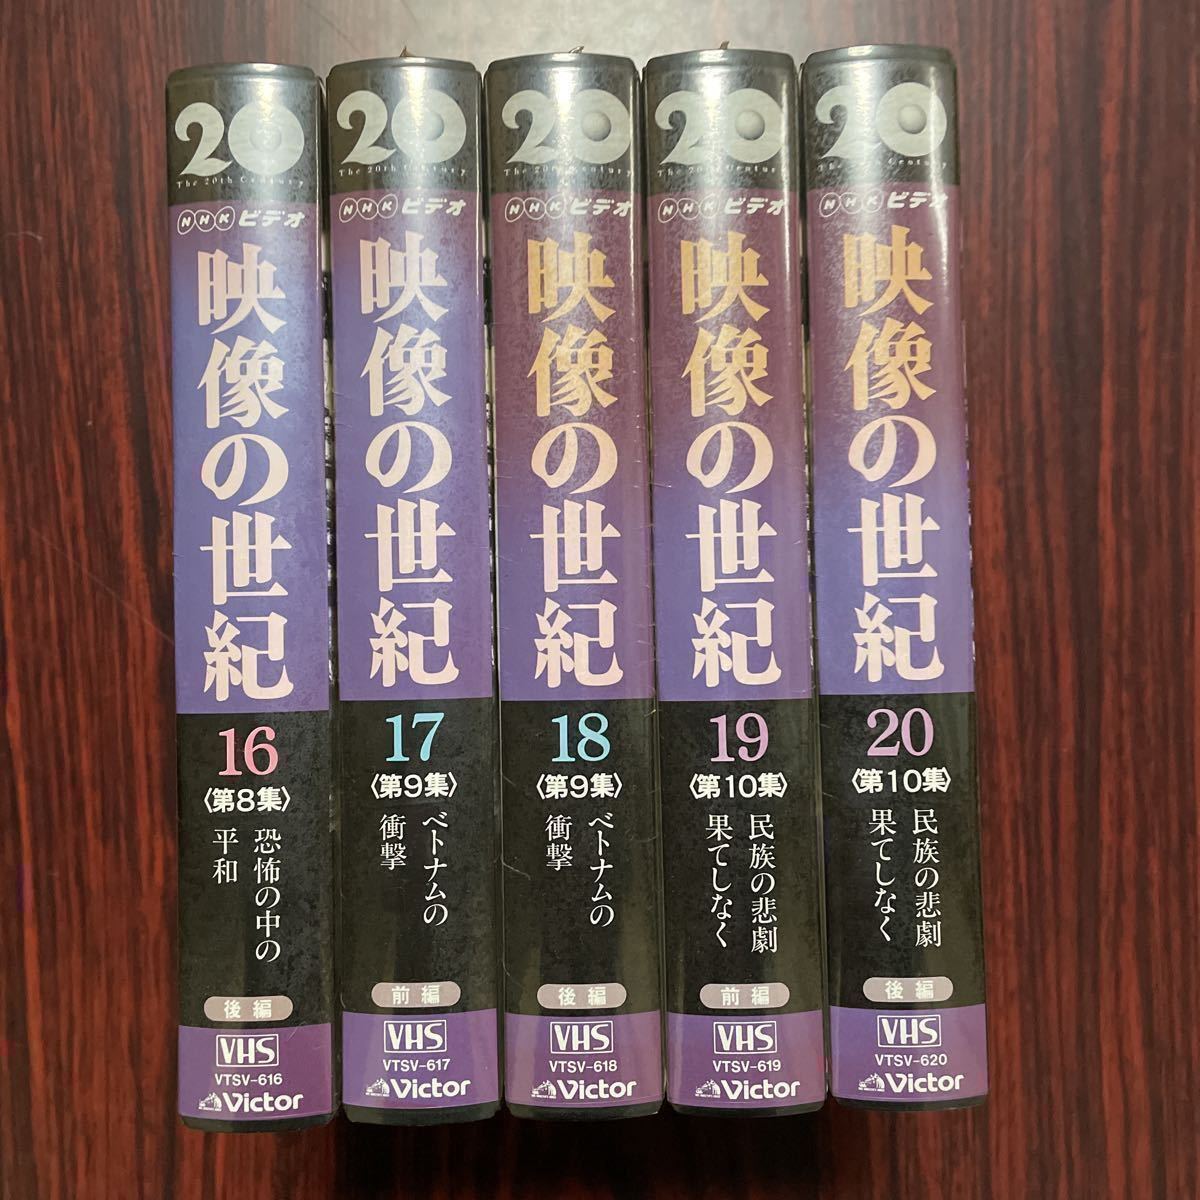 VHS изображение. век все 22 шт нераспечатанный брошюра имеется NHK